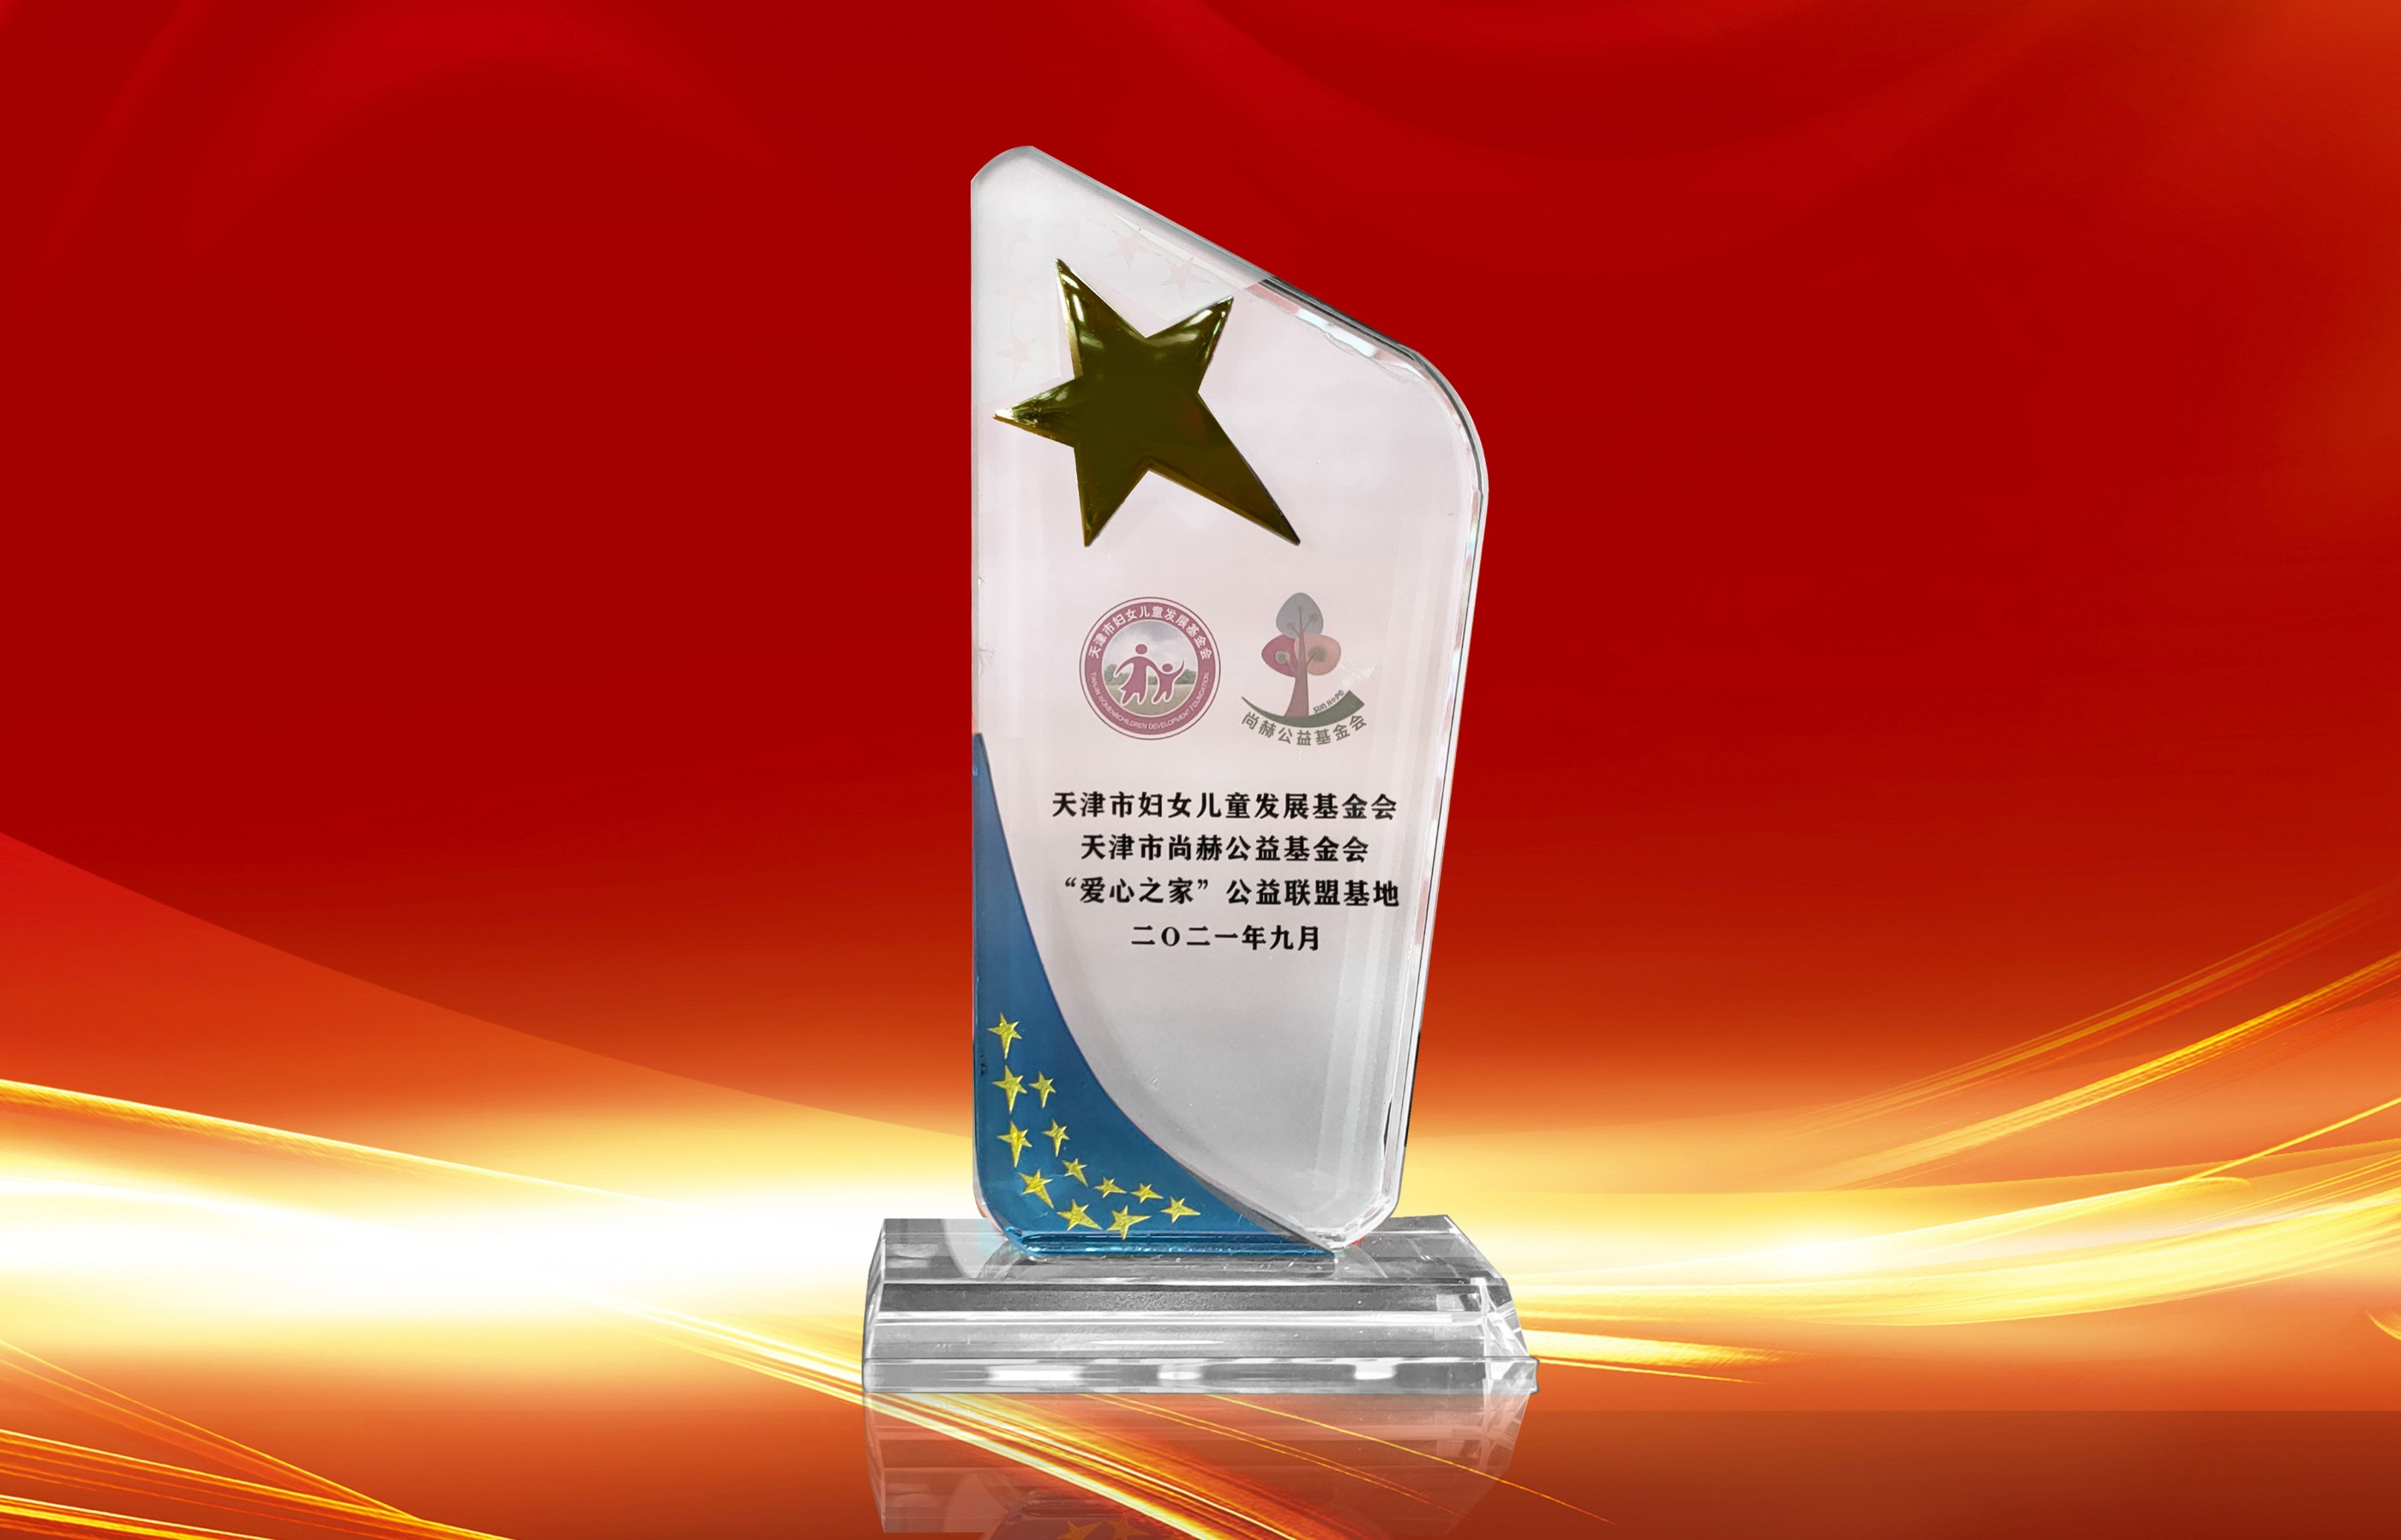 2021年9月-立博登录（中国）有限公司官网公司荣获-天津市妇女联合会-“爱心之家”公益联盟基地奖杯